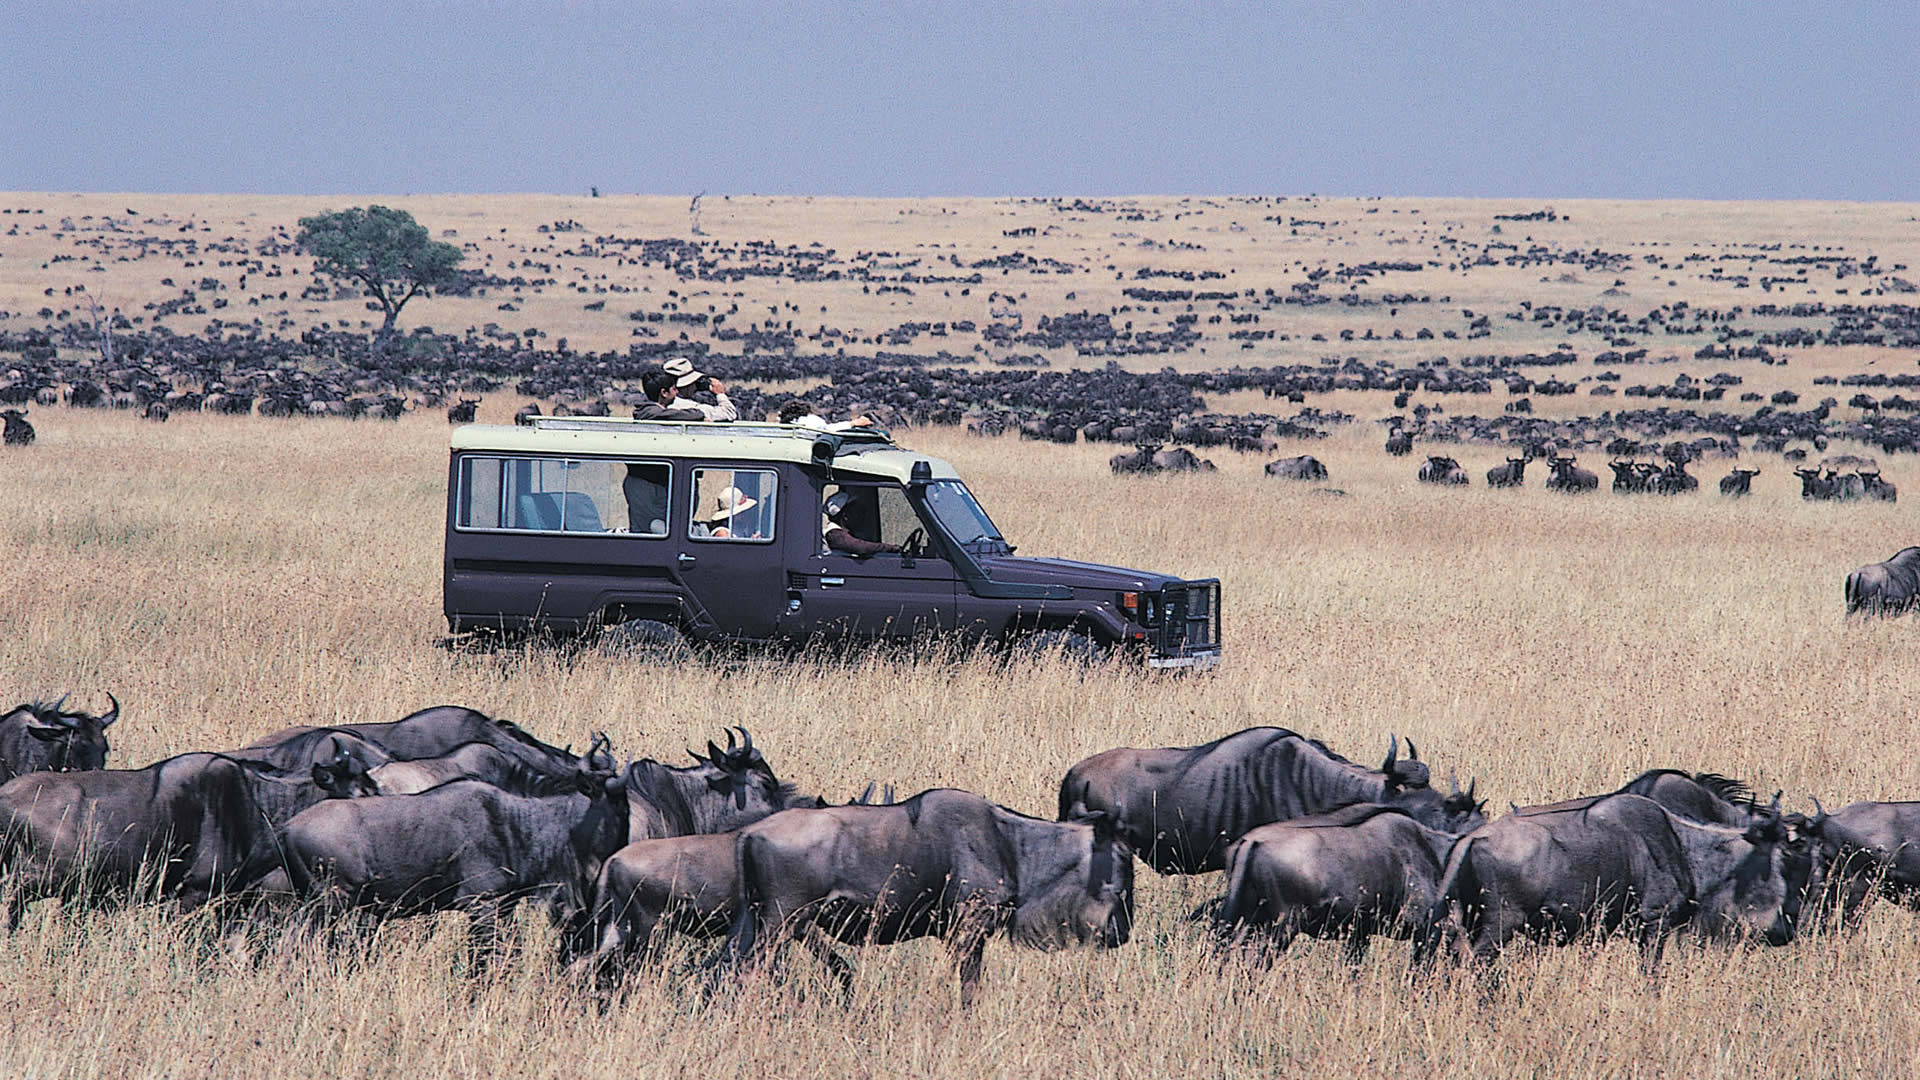 Depart for Maasai Mara National Reserve